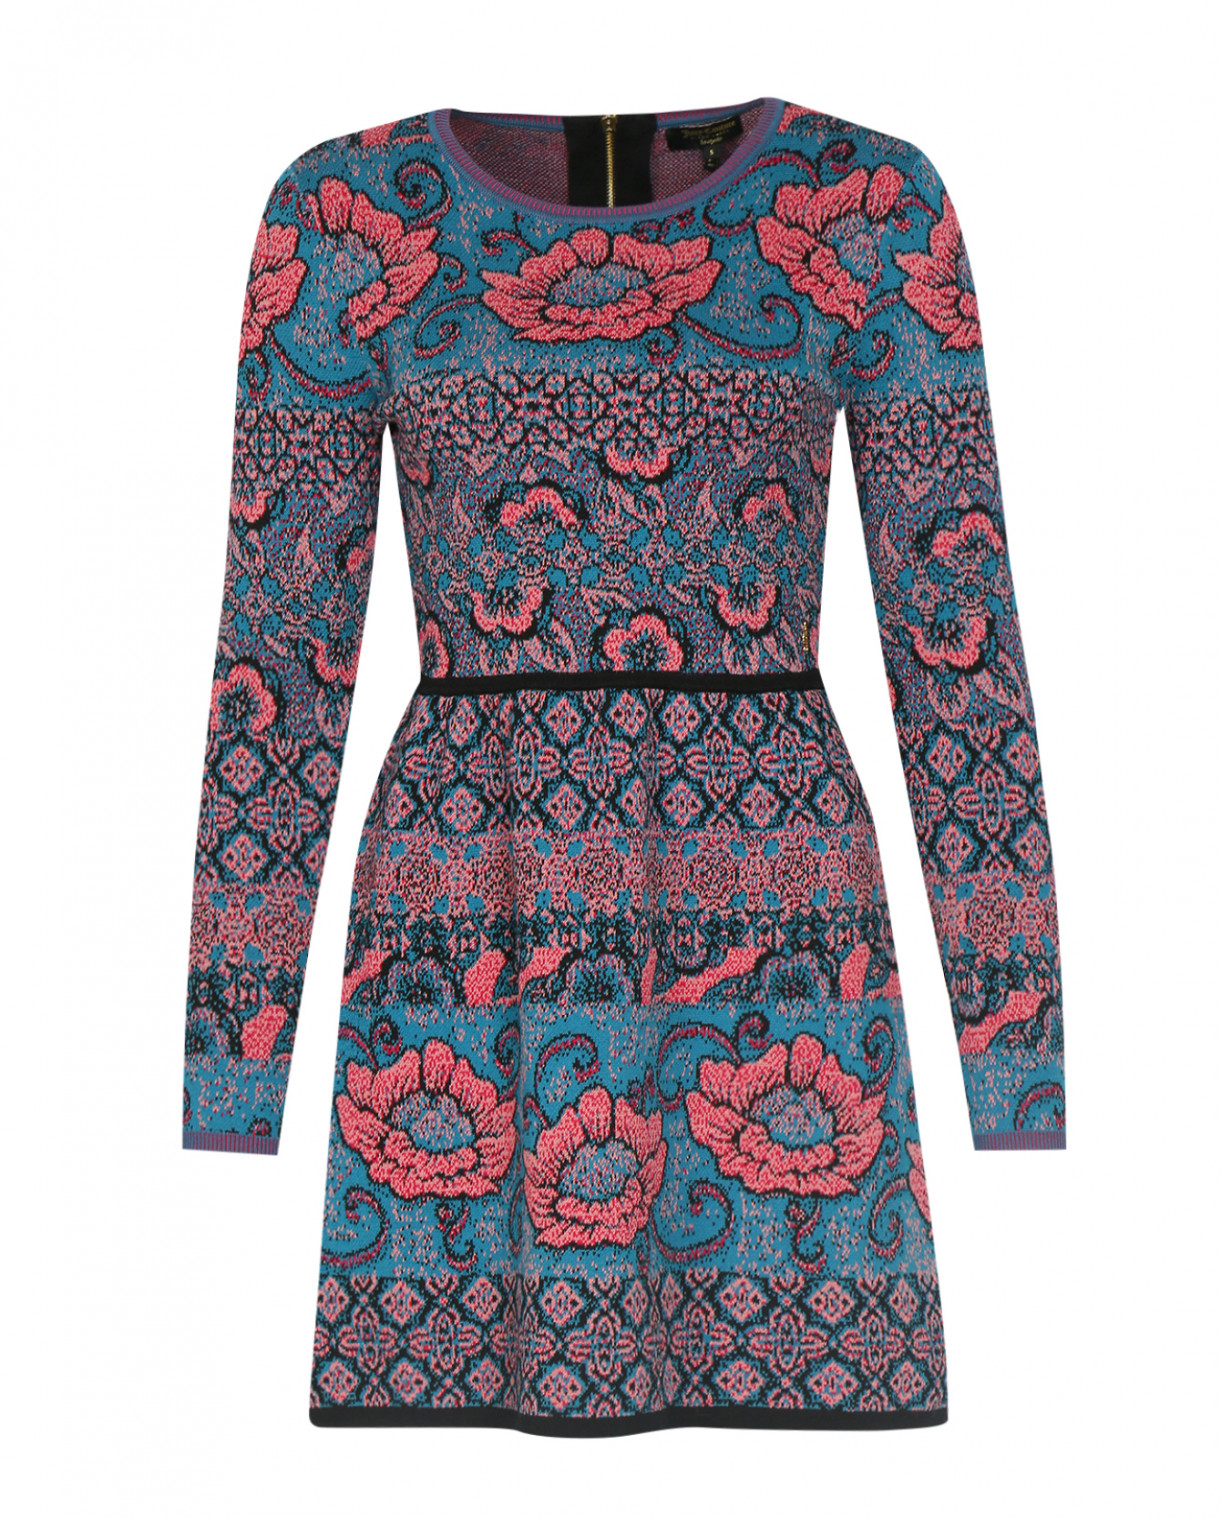 Платье из хлопка с цветочным узором Juicy Couture  –  Общий вид  – Цвет:  Синий